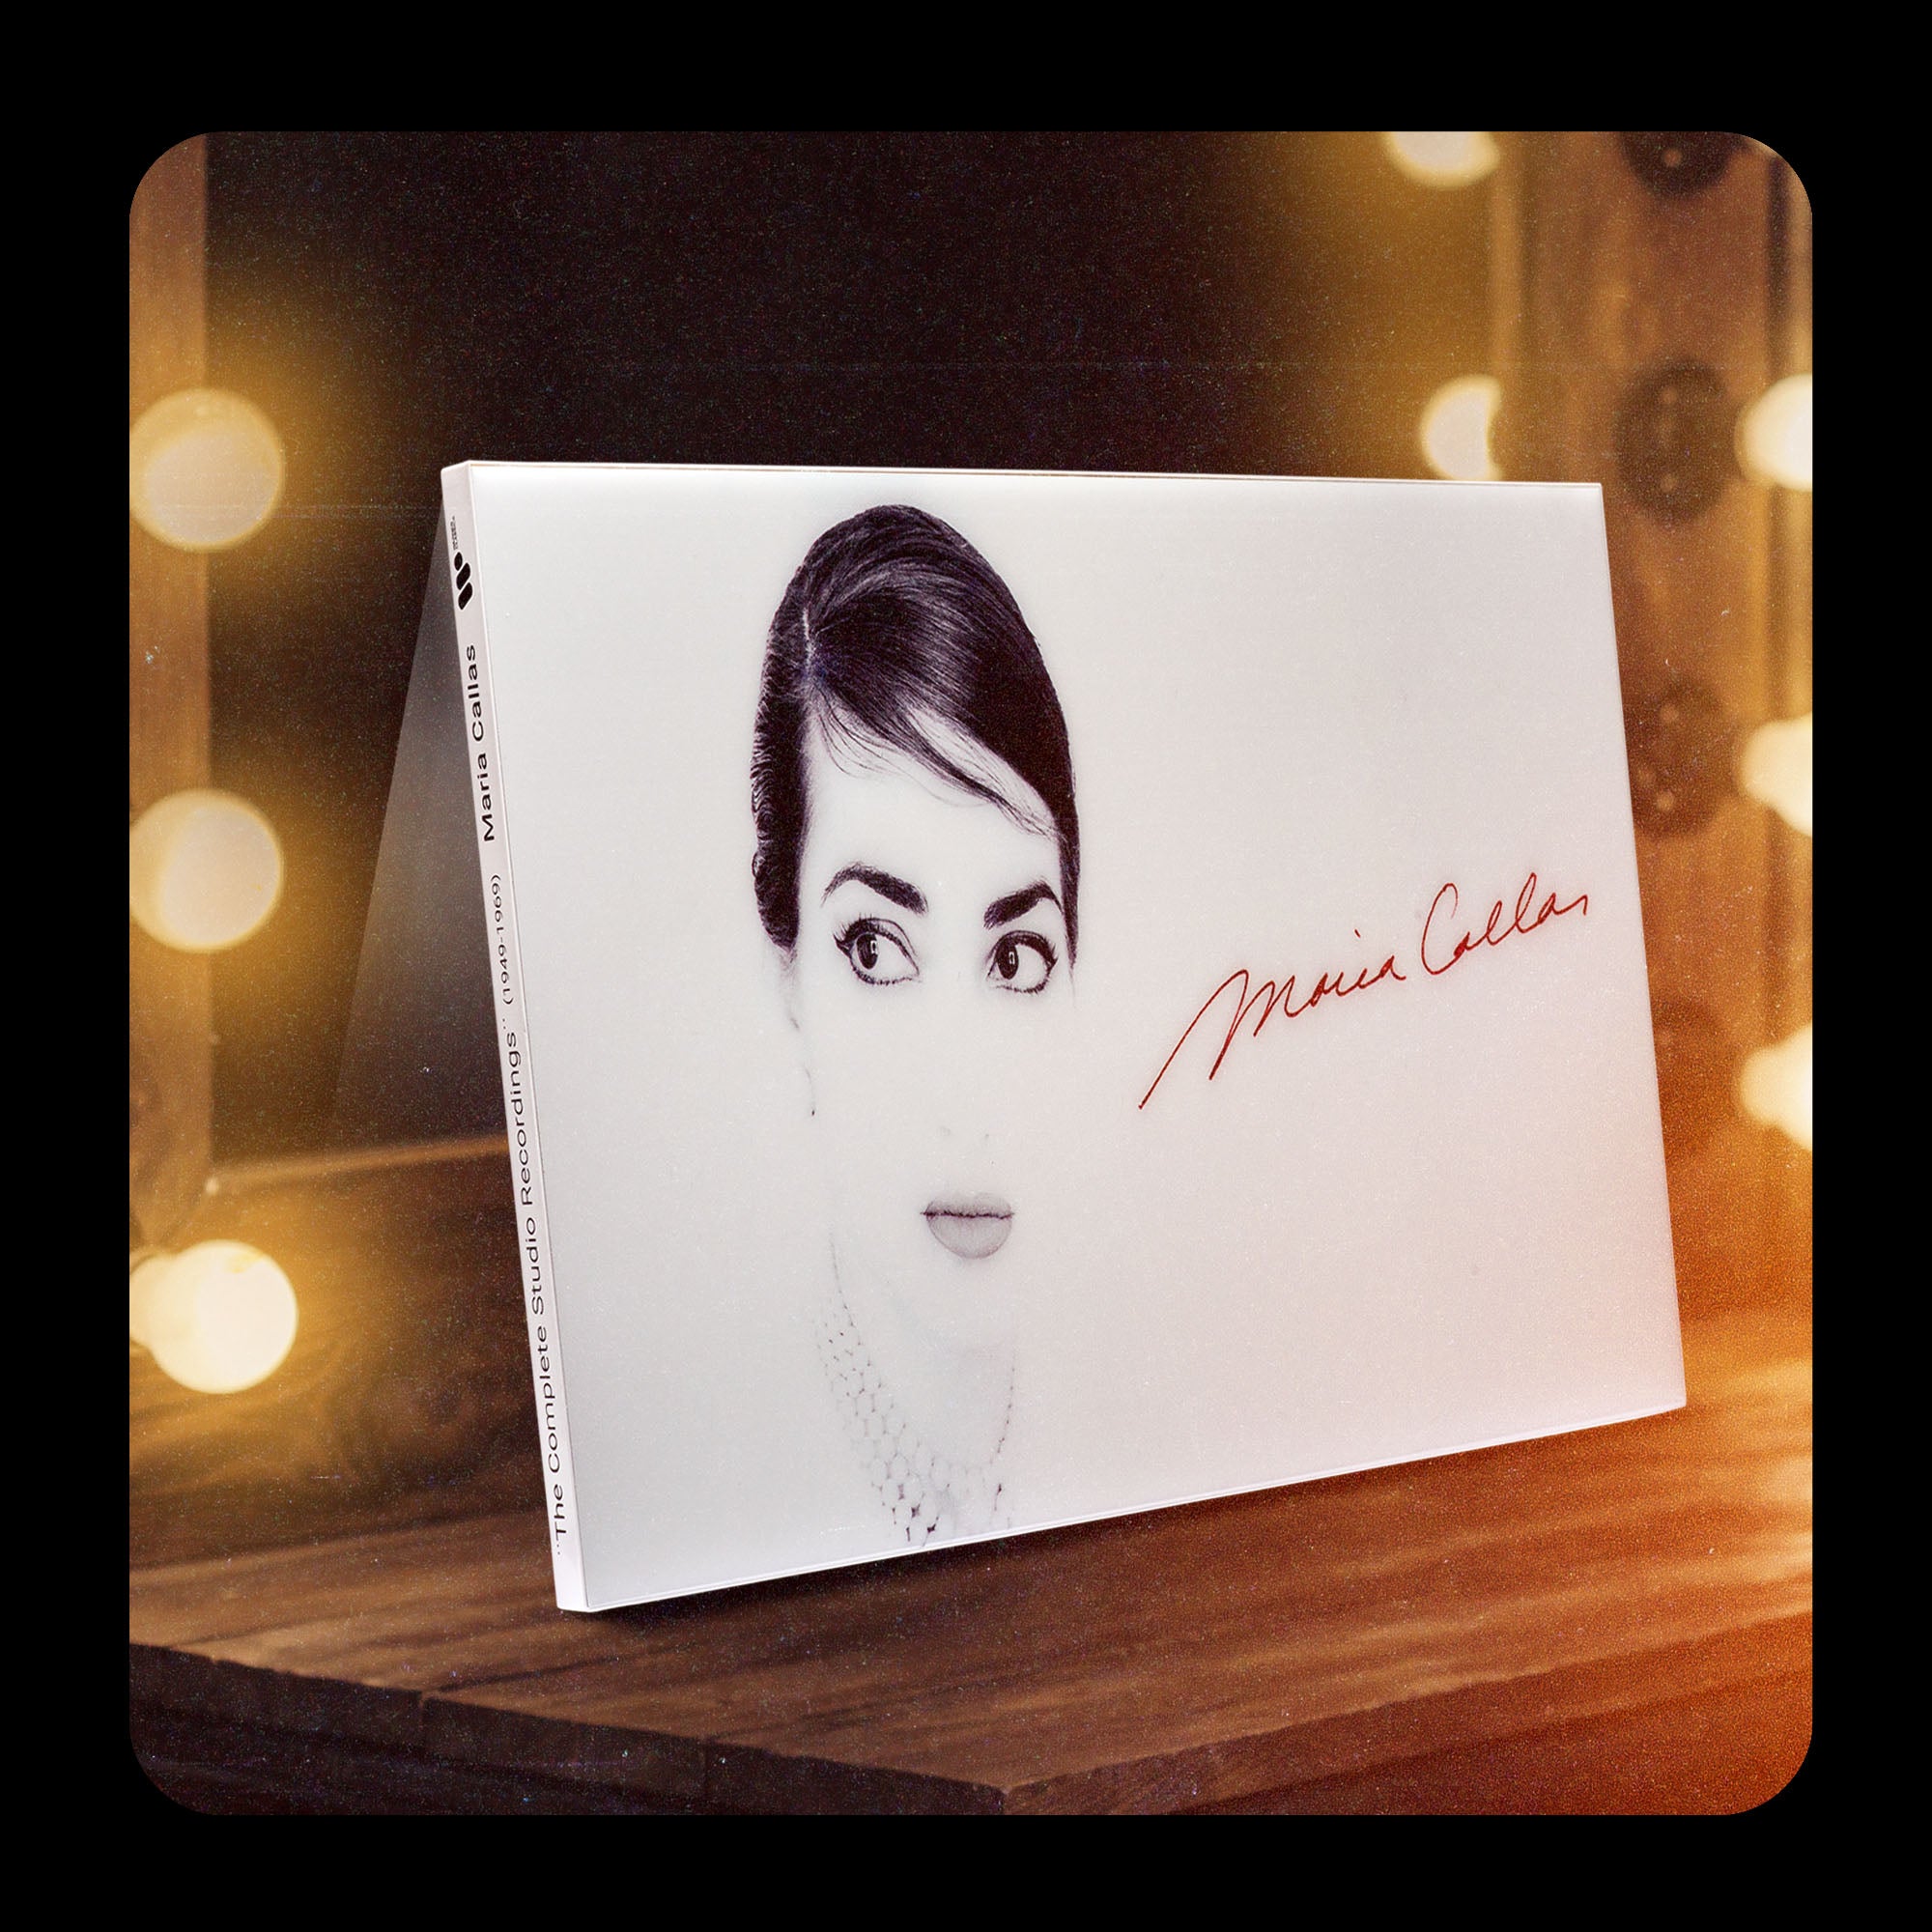 The studio complete recordings - Maria Callas